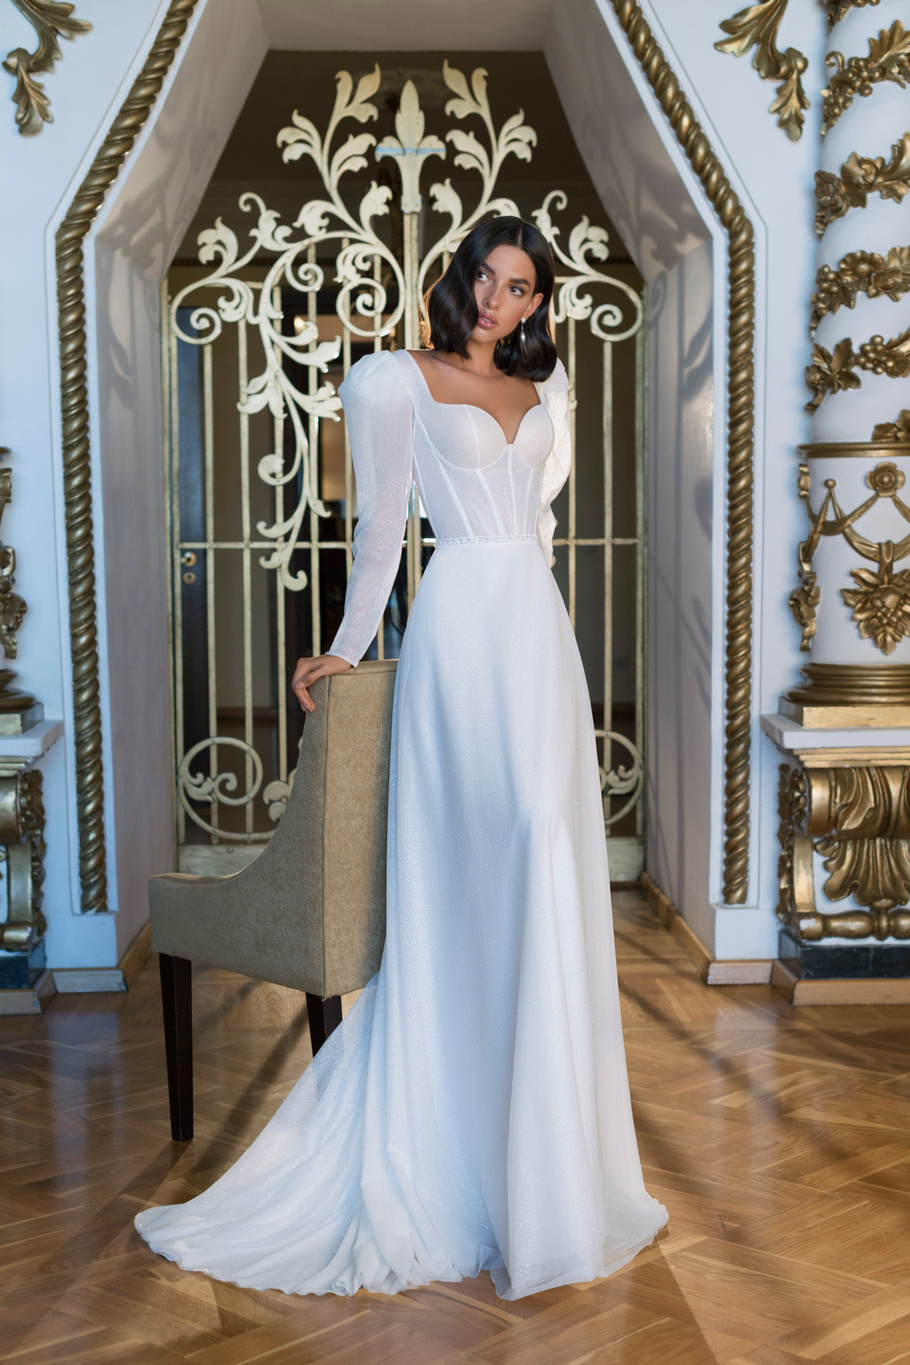 Купить свадебное платье «Элвен» Мэрри Марк из коллекции 2022 года в Мэри Трюфель